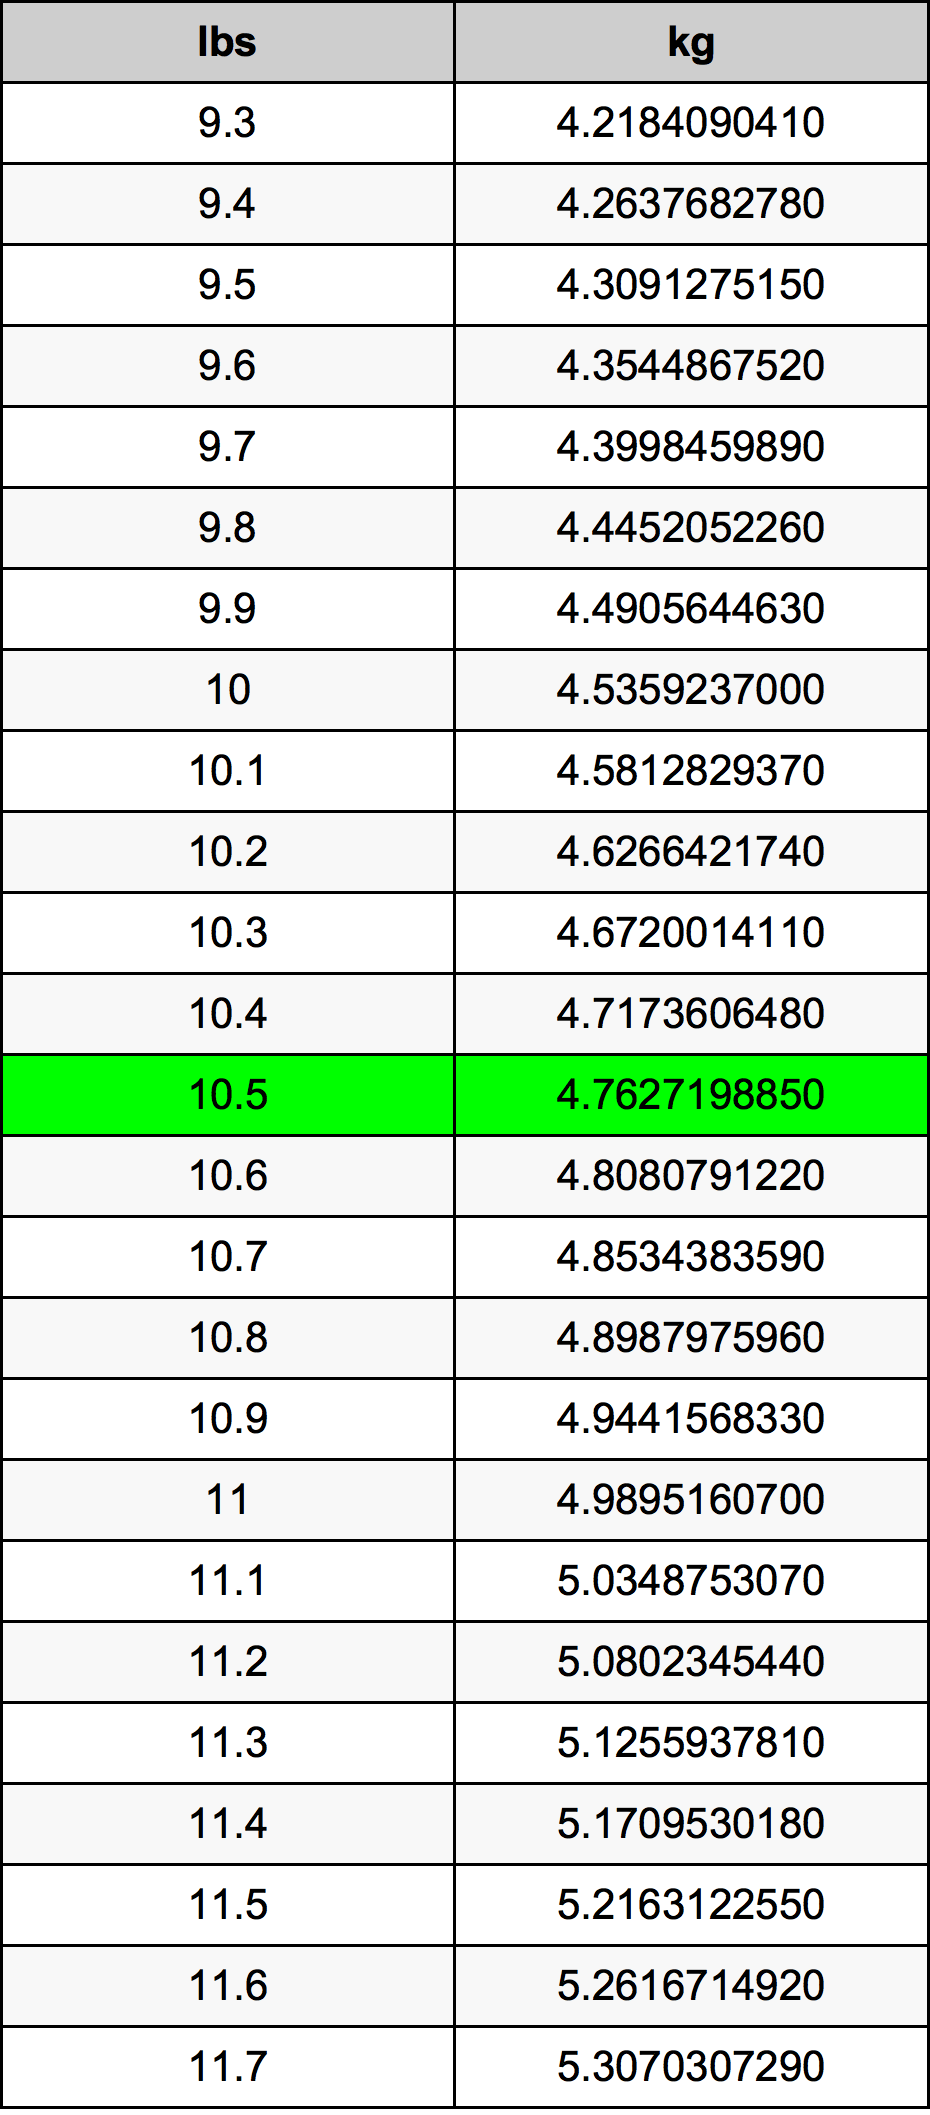 10.5 Libbra tabella di conversione